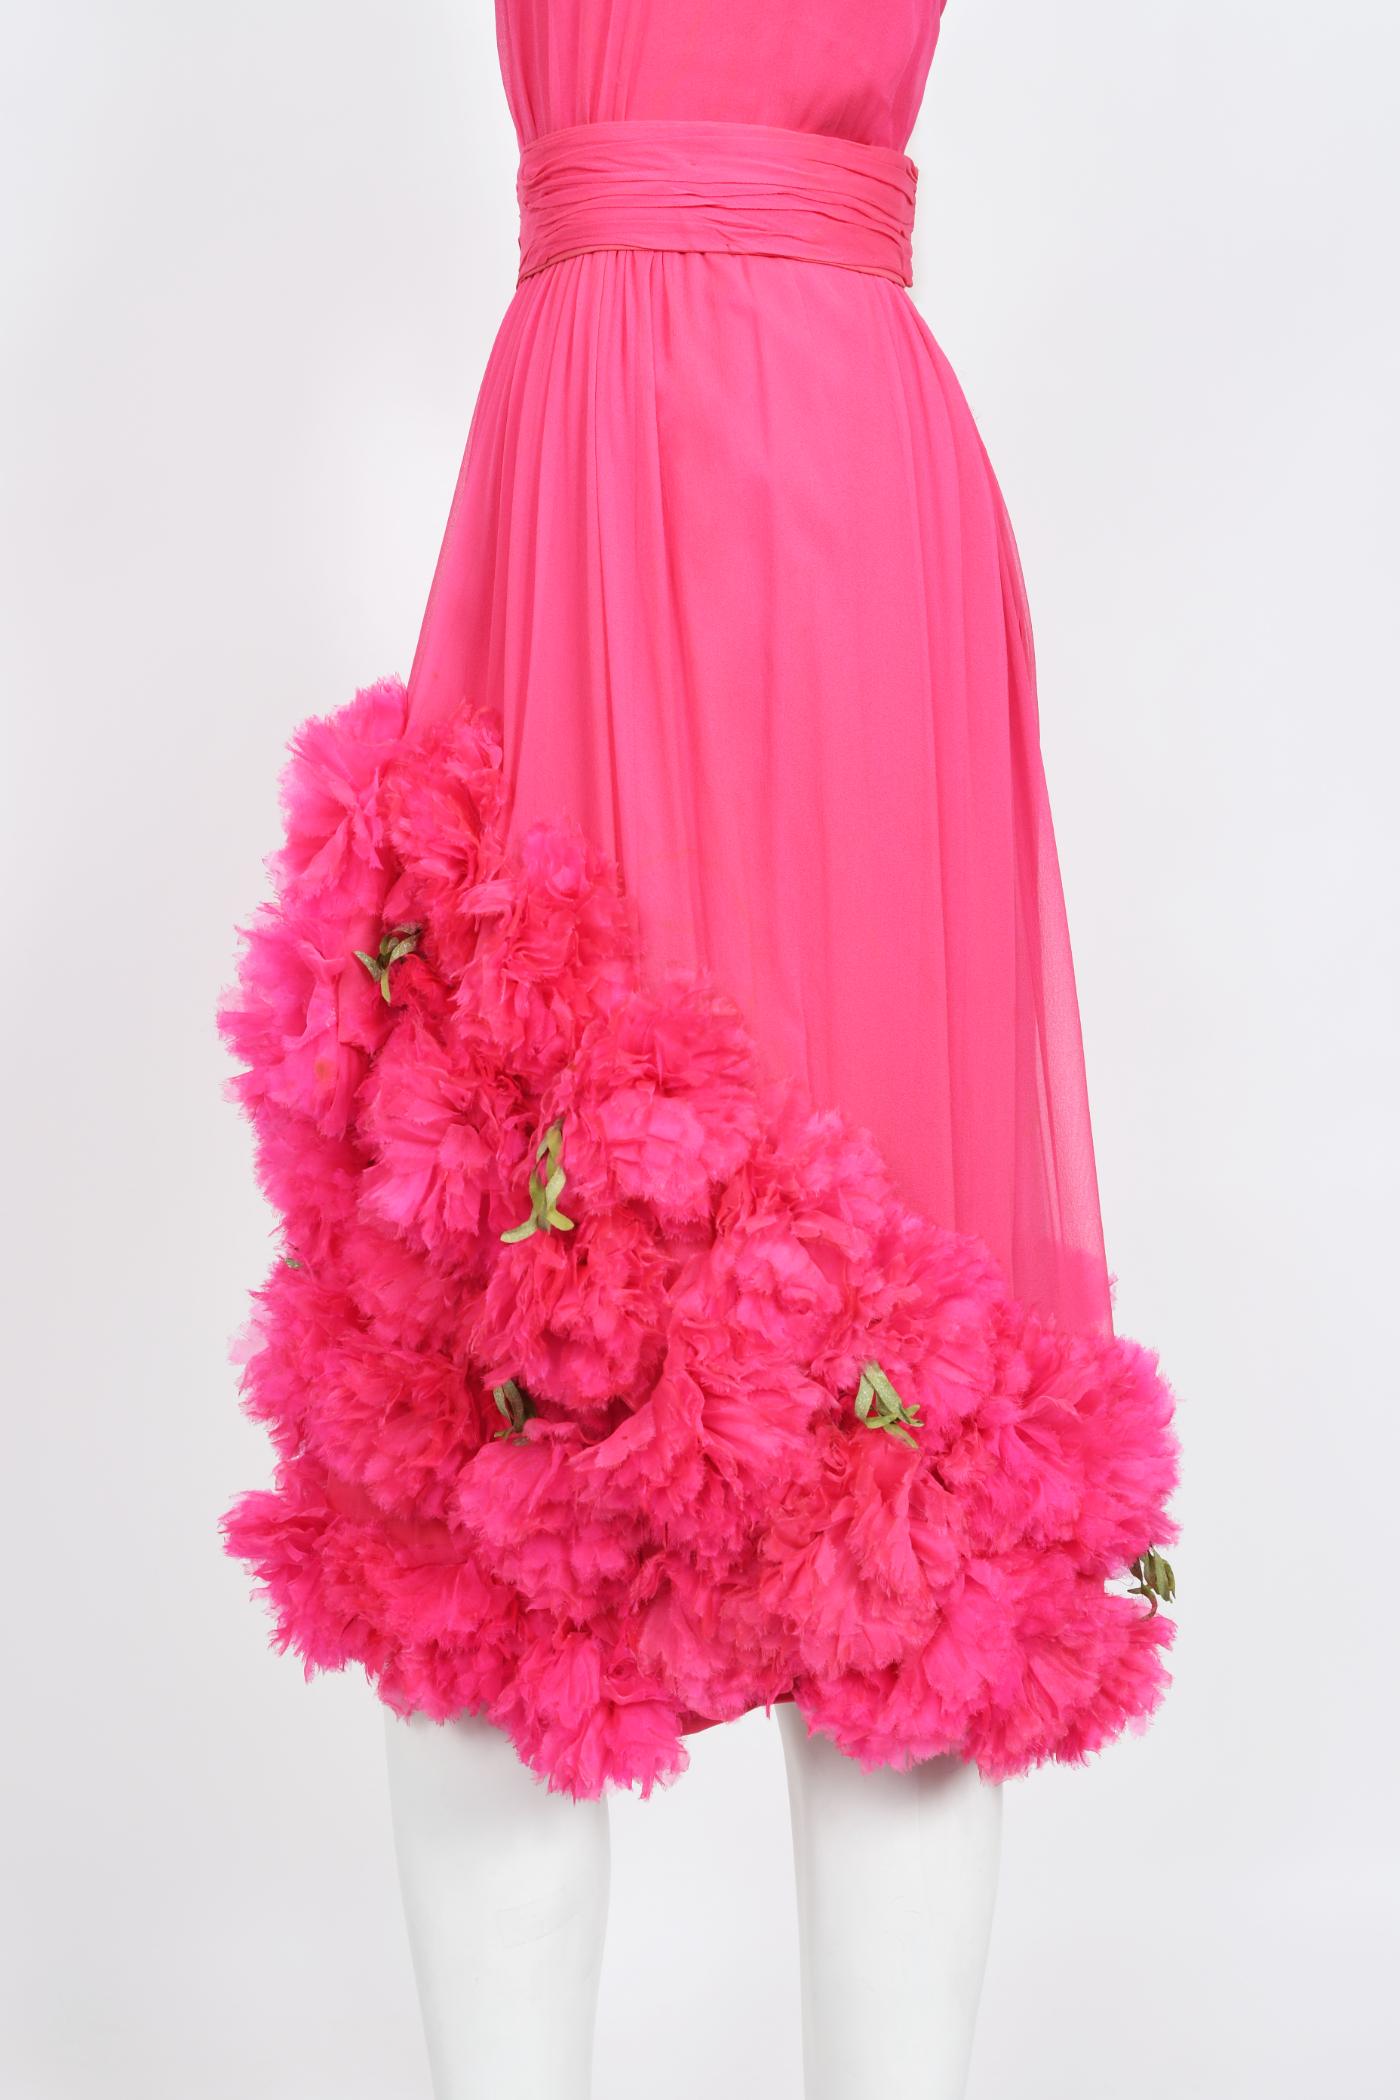 Vintage 1950's Ceil Chapman Pink Silk Chiffon Floral Appliqué Cocktail Dress  For Sale 1